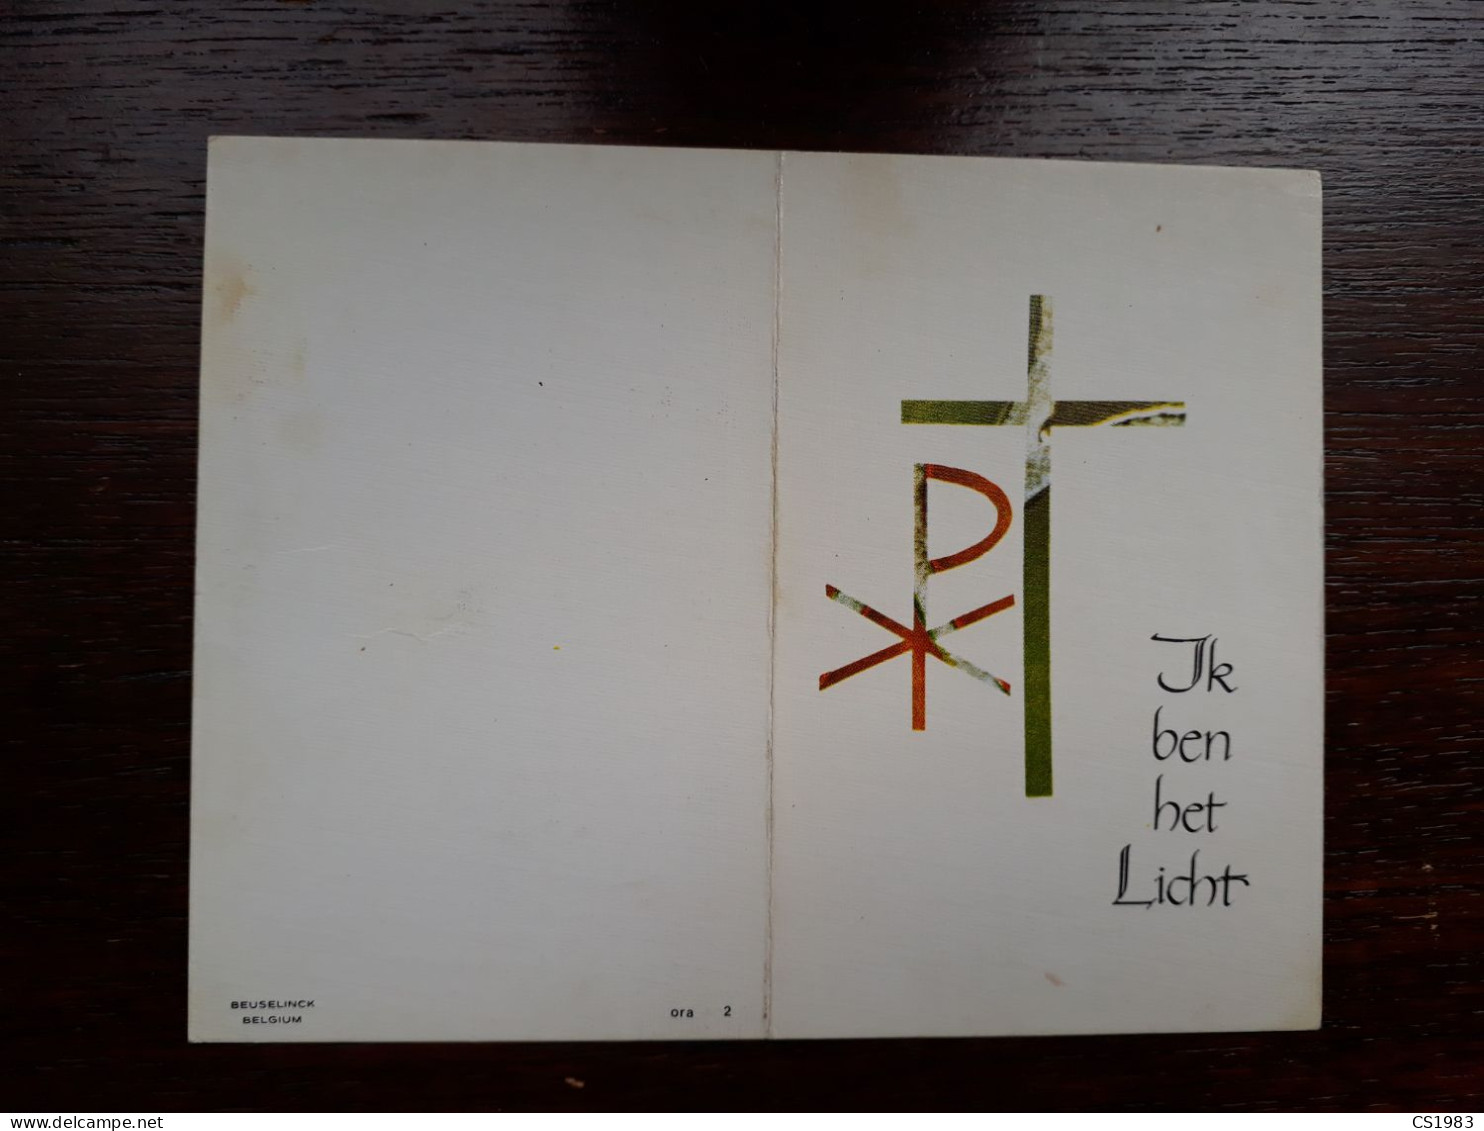 Paul Lommelen ° Mol 1955 + Merksplas 1975 (Fam: Janssens - Van De Laer) - Todesanzeige